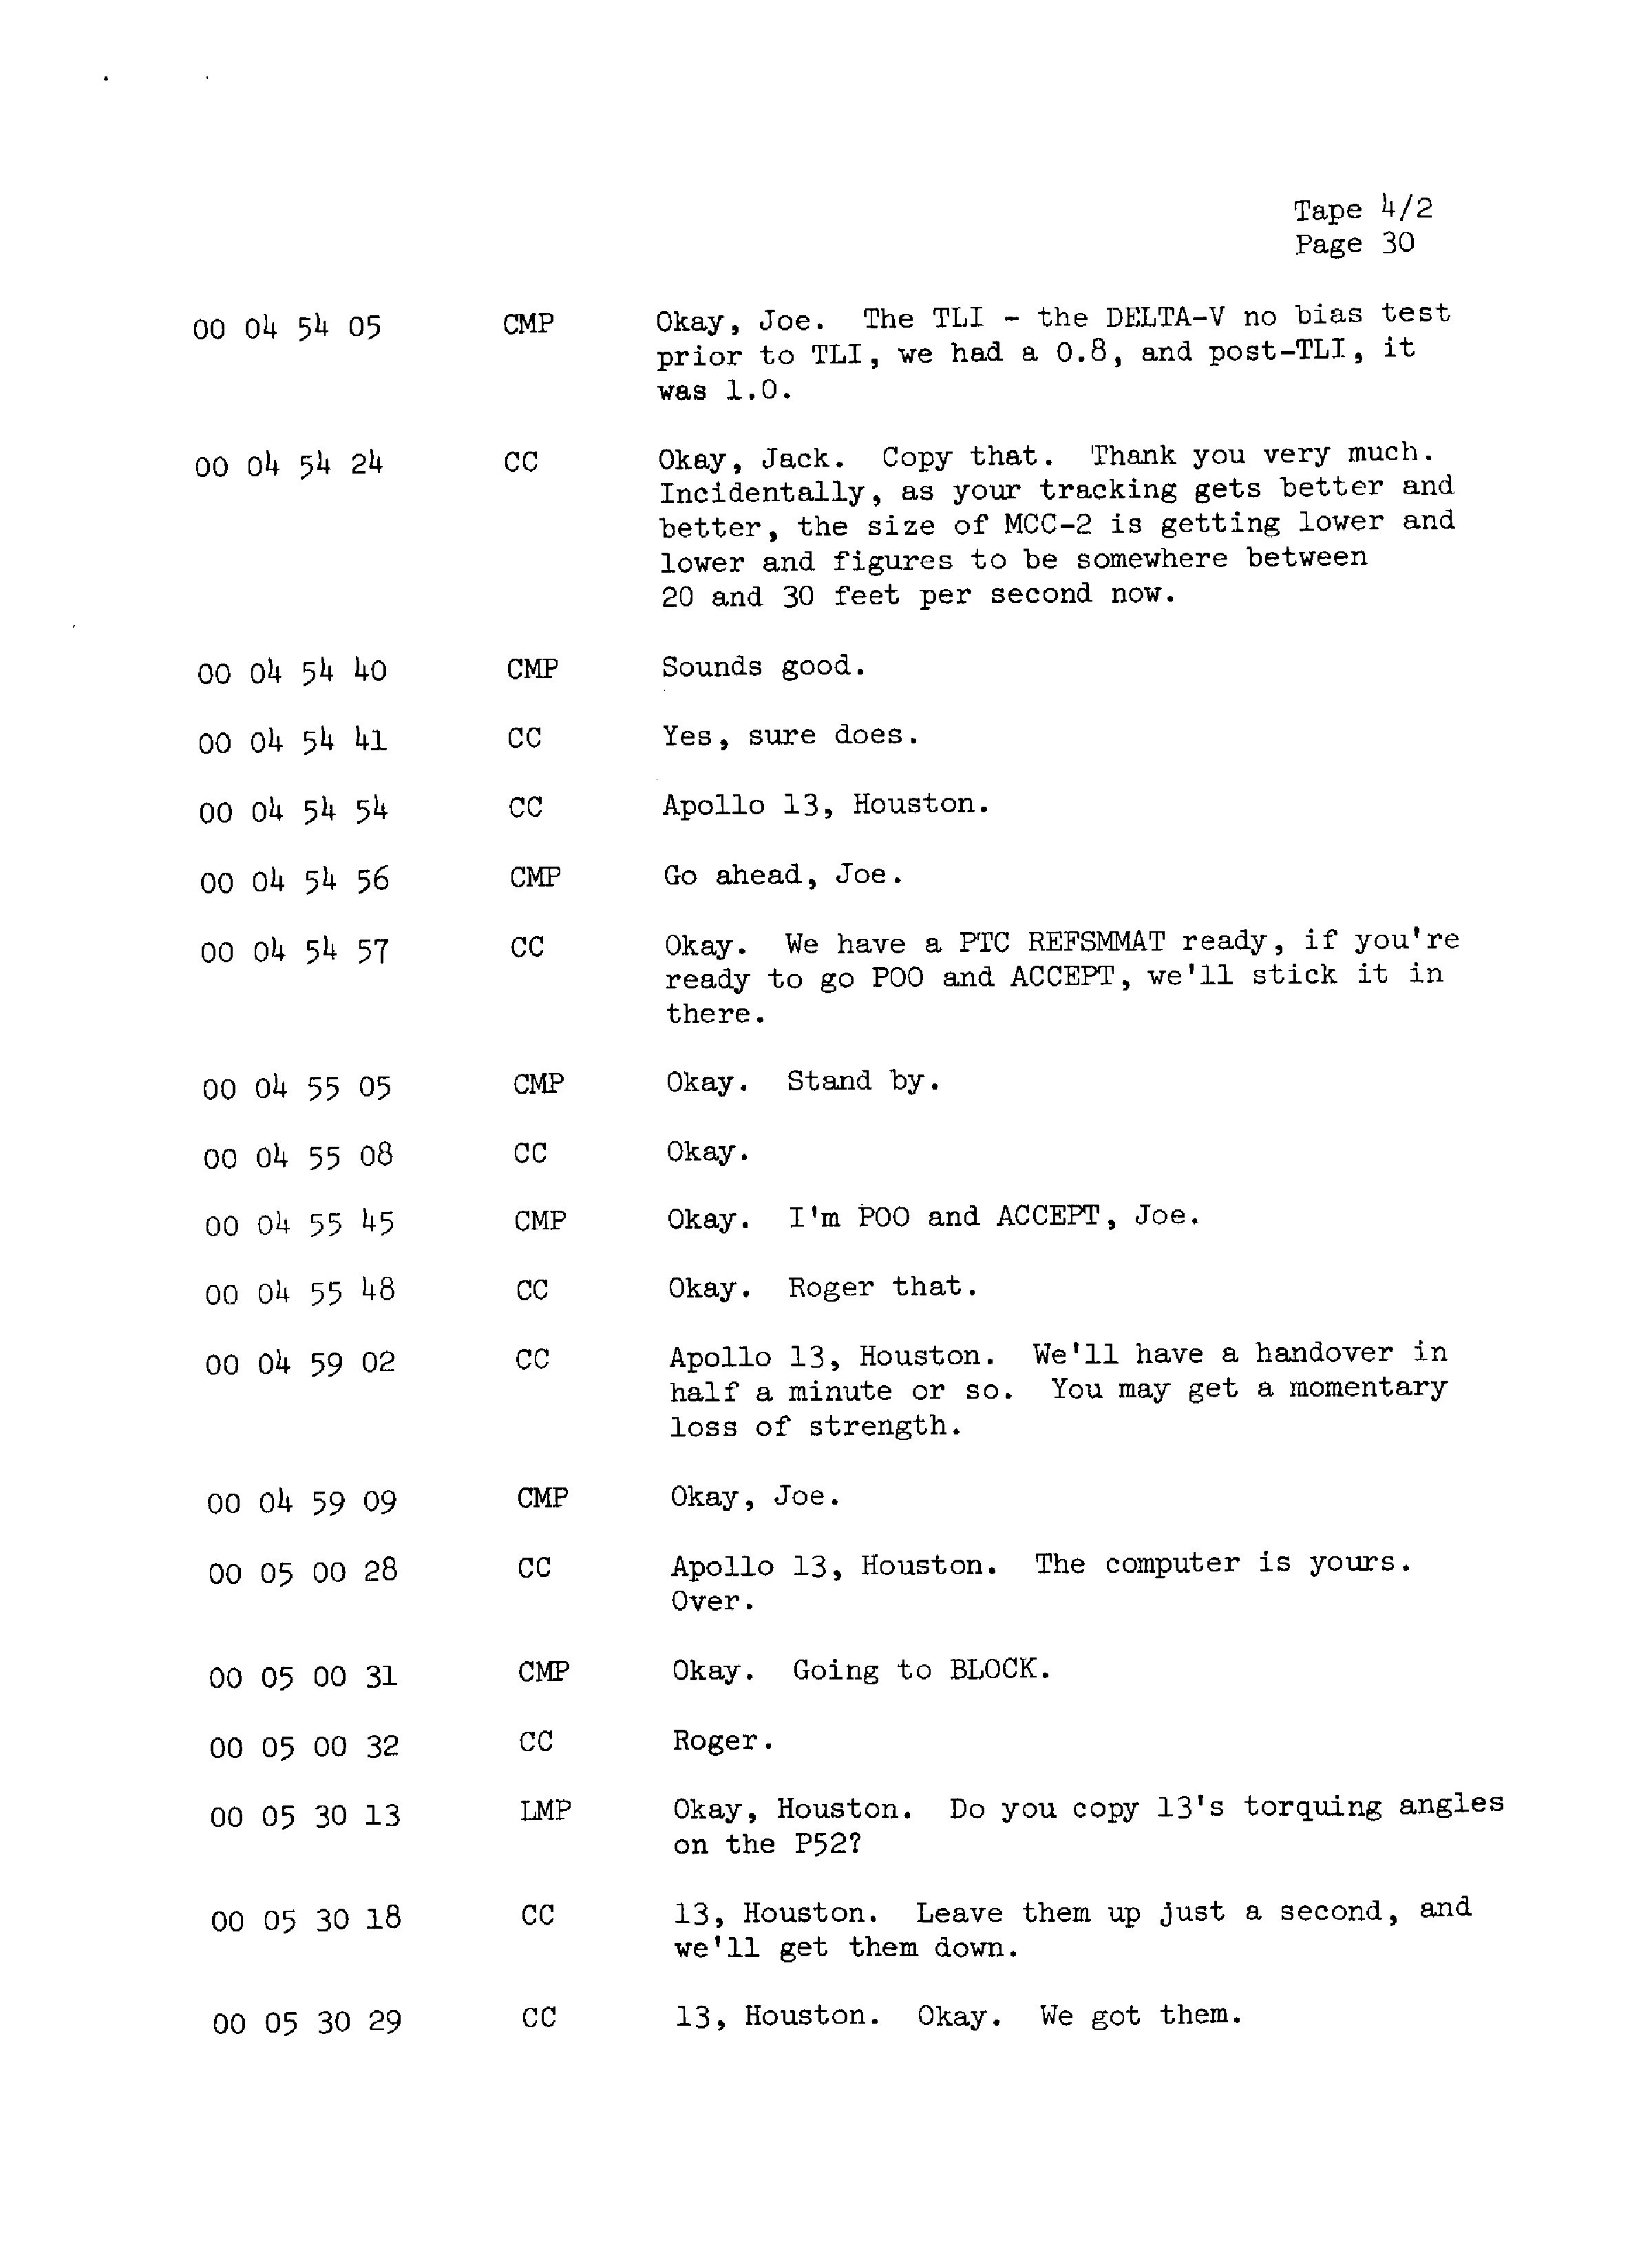 Page 37 of Apollo 13’s original transcript